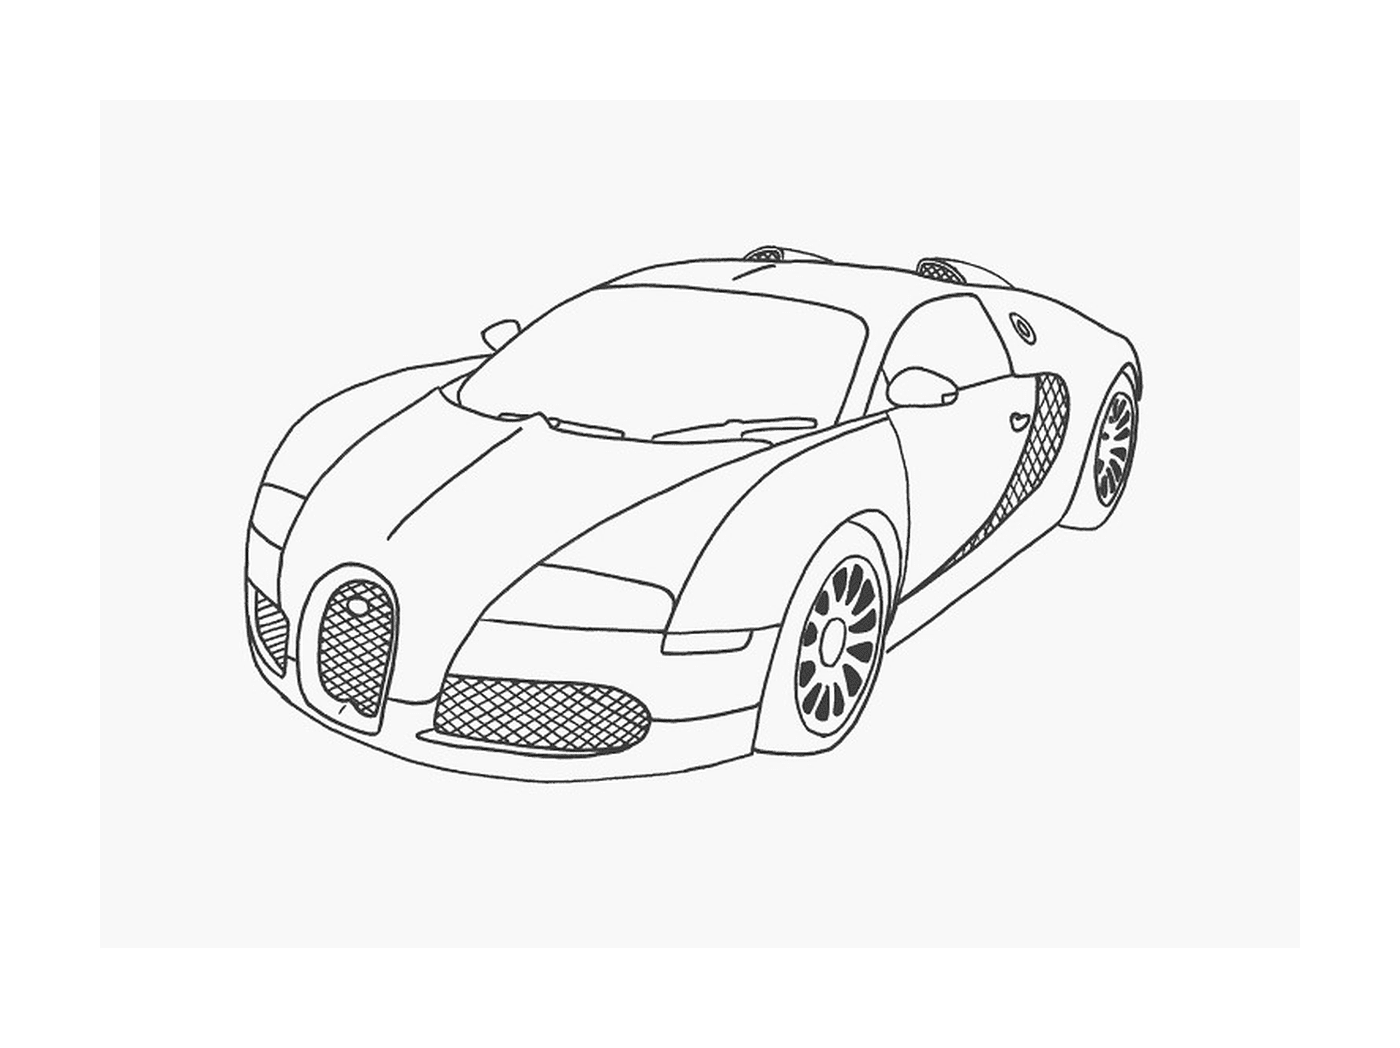  Bugatti carro de luxo 